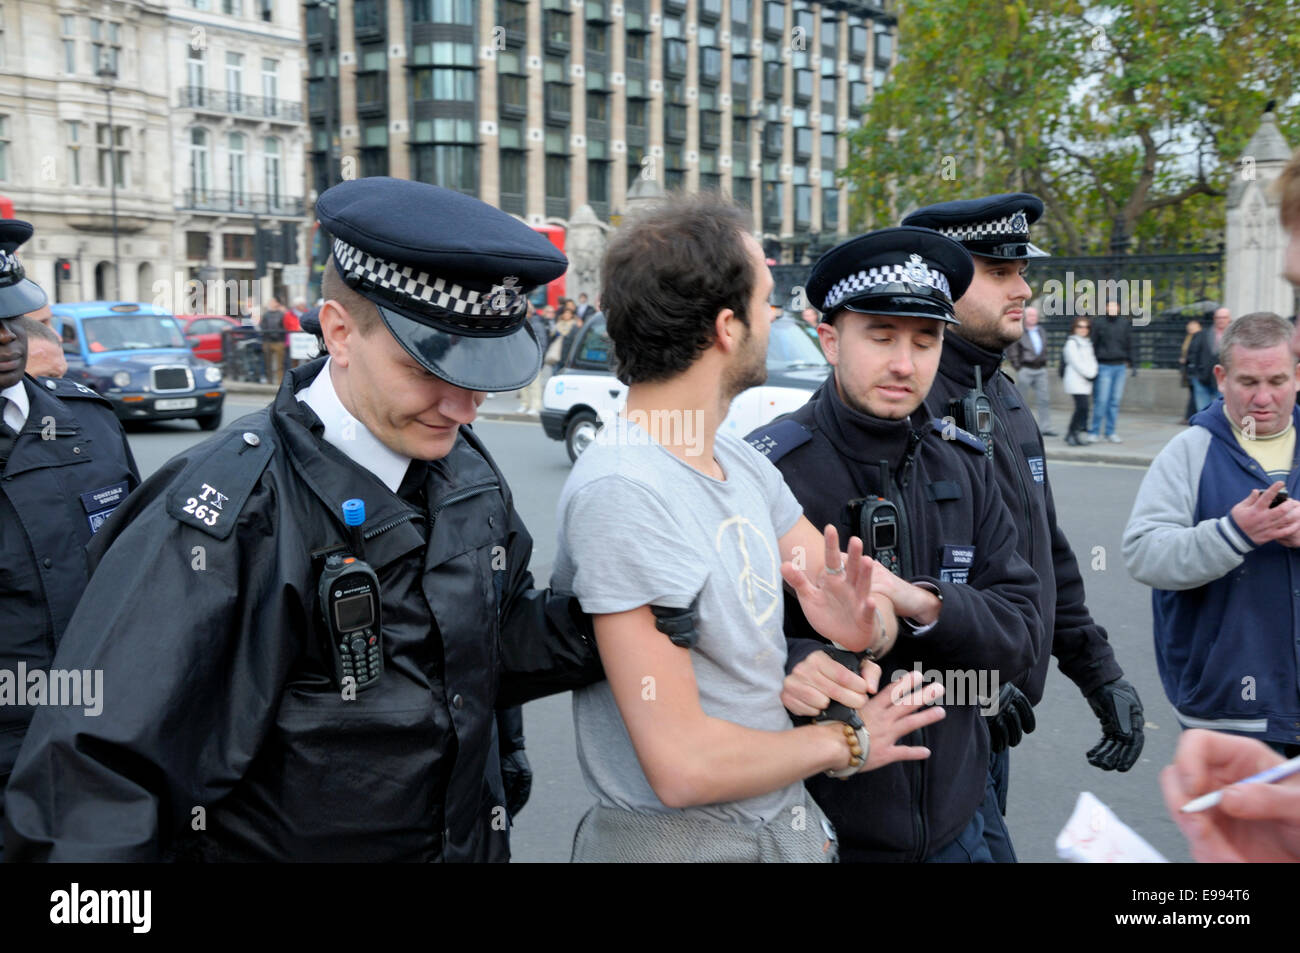 Londra, Regno Unito. 22 ottobre, 2014. Occupare Londra protestor rimane sul plinto di Winston Churchill statua in piazza del Parlamento - la polizia arresta un uomo per il lancio di cibo per lui. Foto Stock